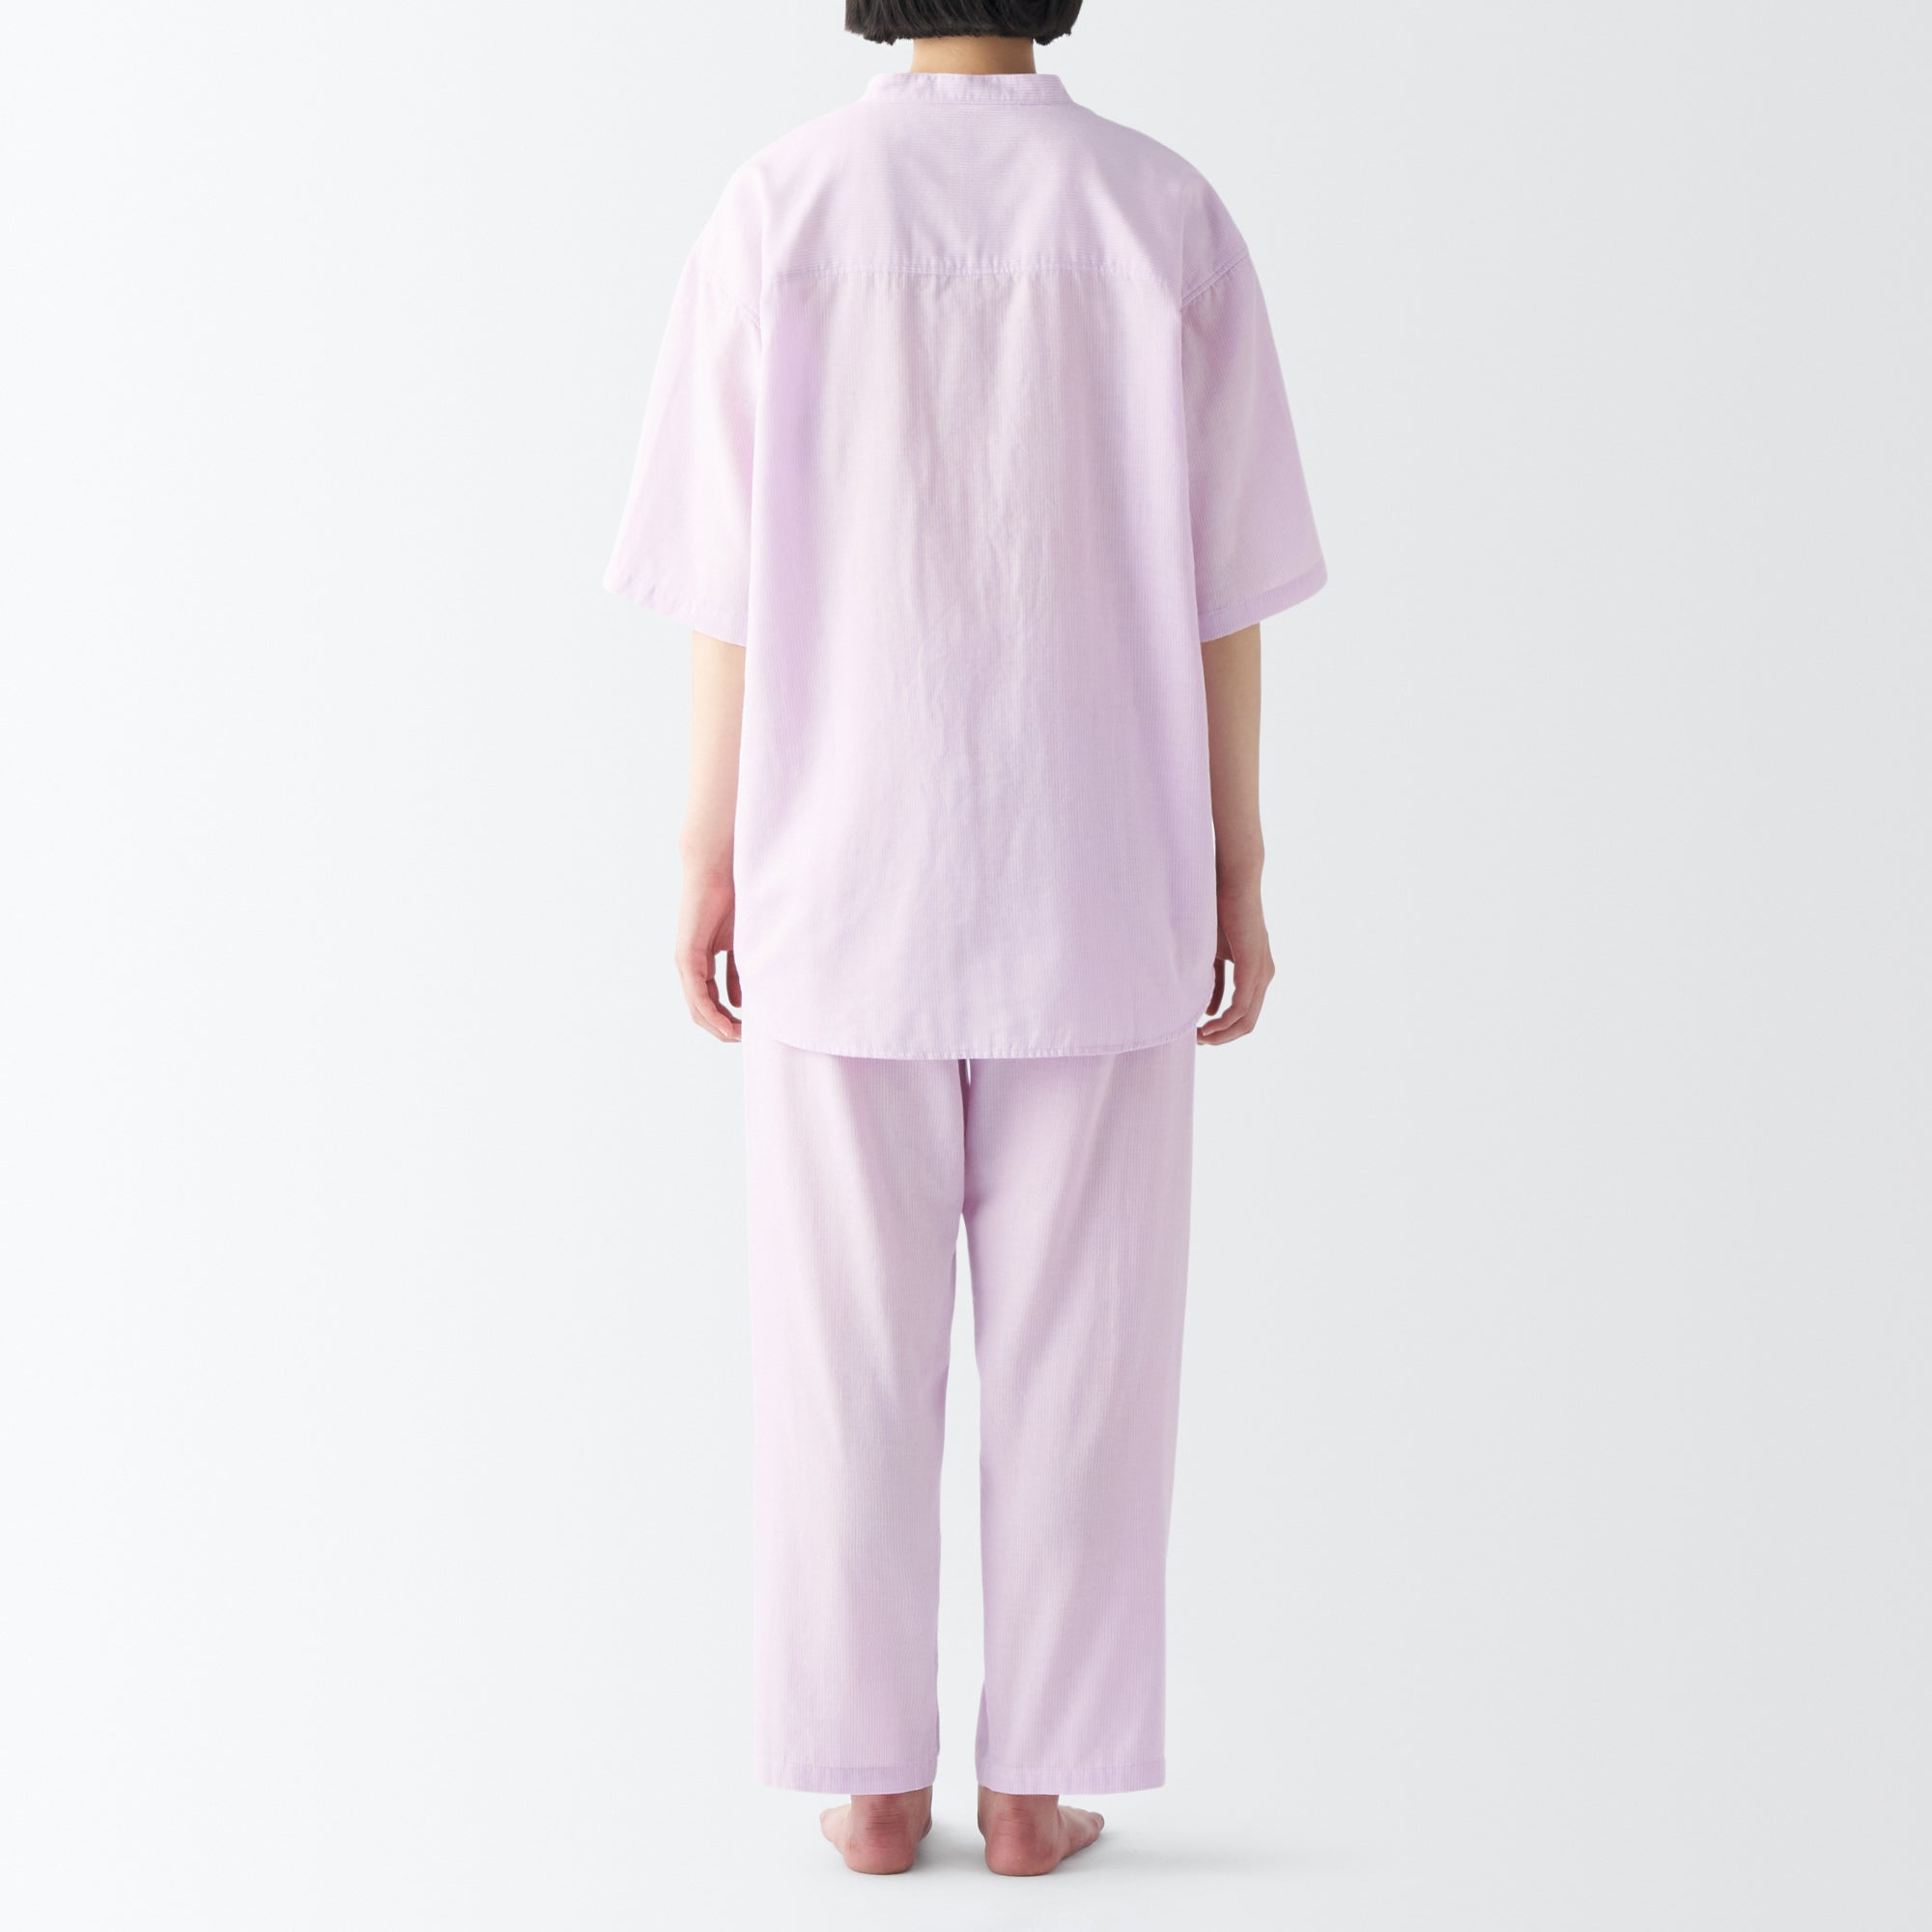 Women's Side Seamless Lightweight Gauze 1/2 Sleeve Pajamas